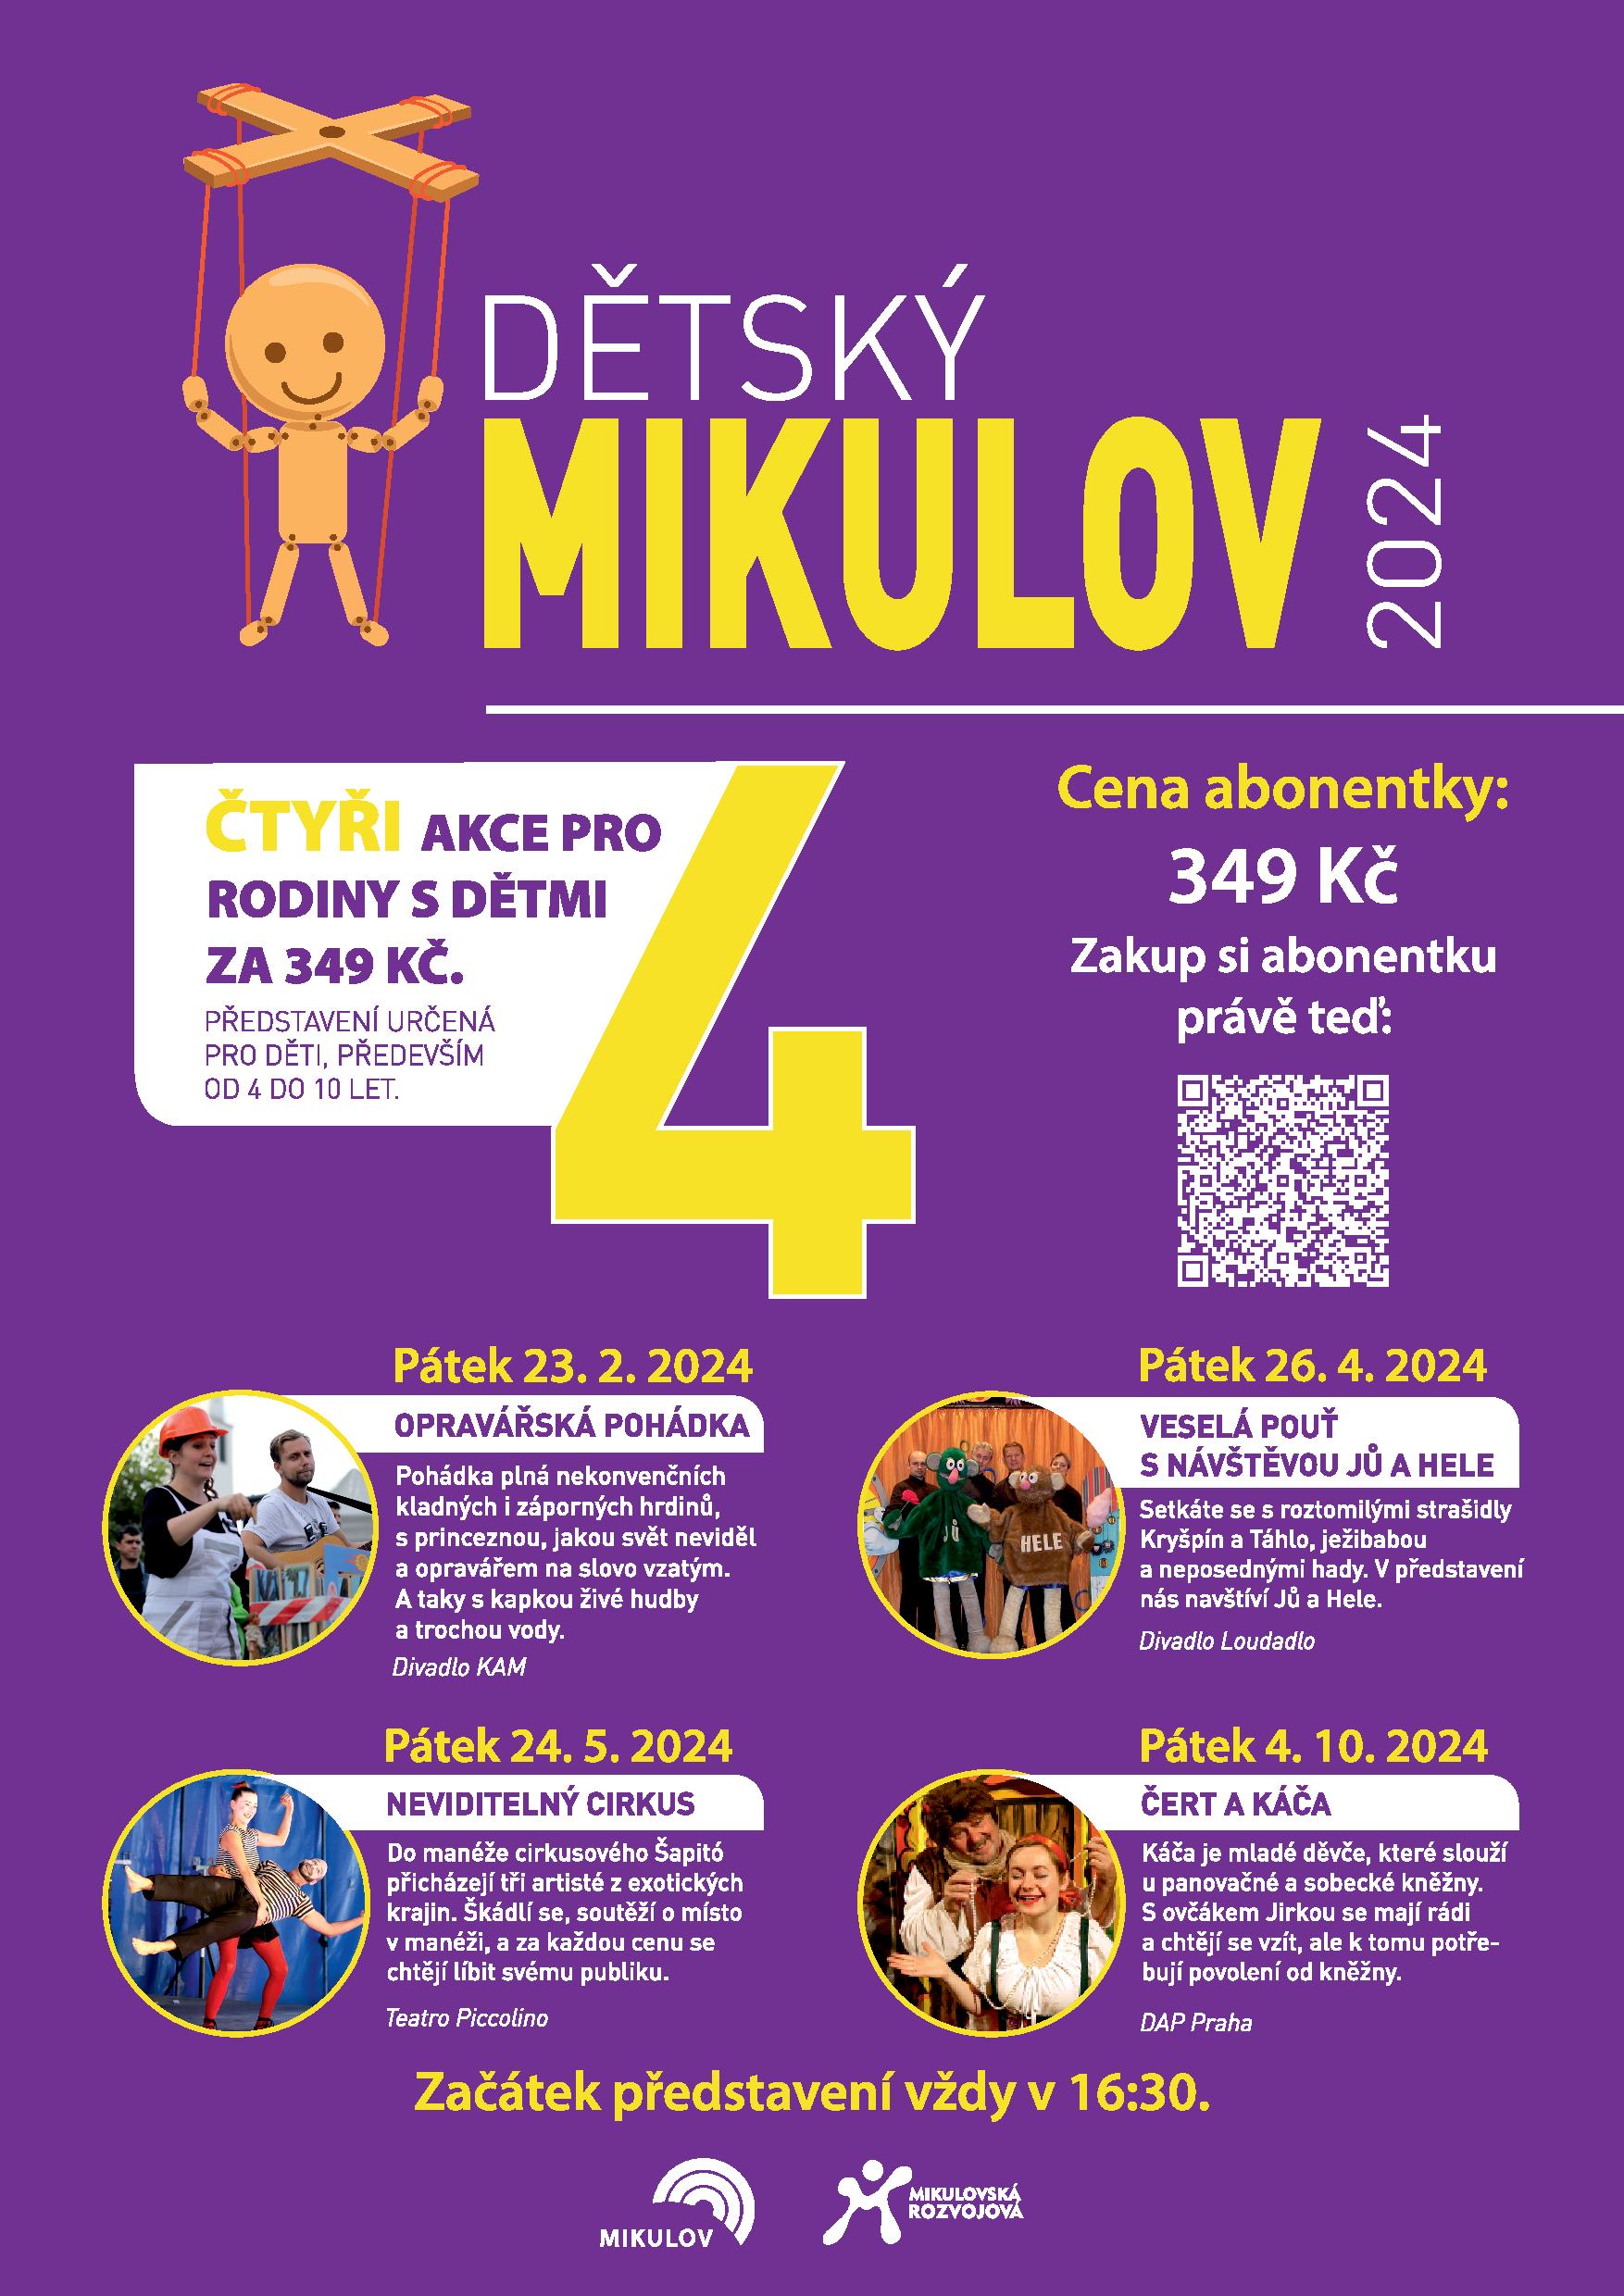 Mikulov24 dětský mikulov divadla vše A3 page 001